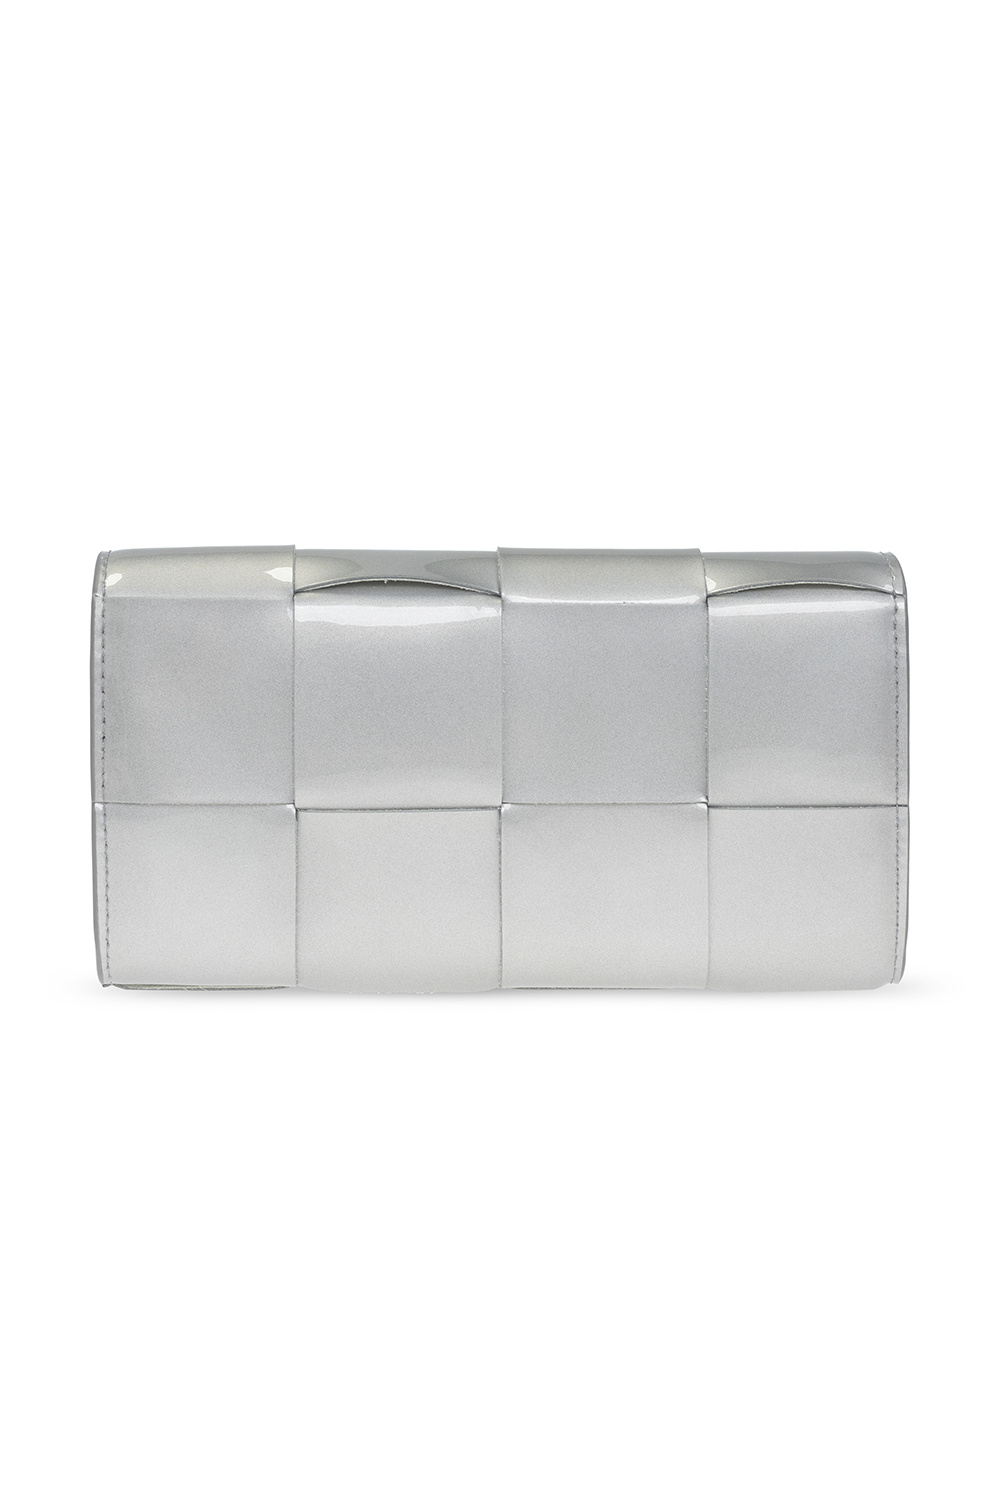 Bottega Veneta ‘Flap’ wallet